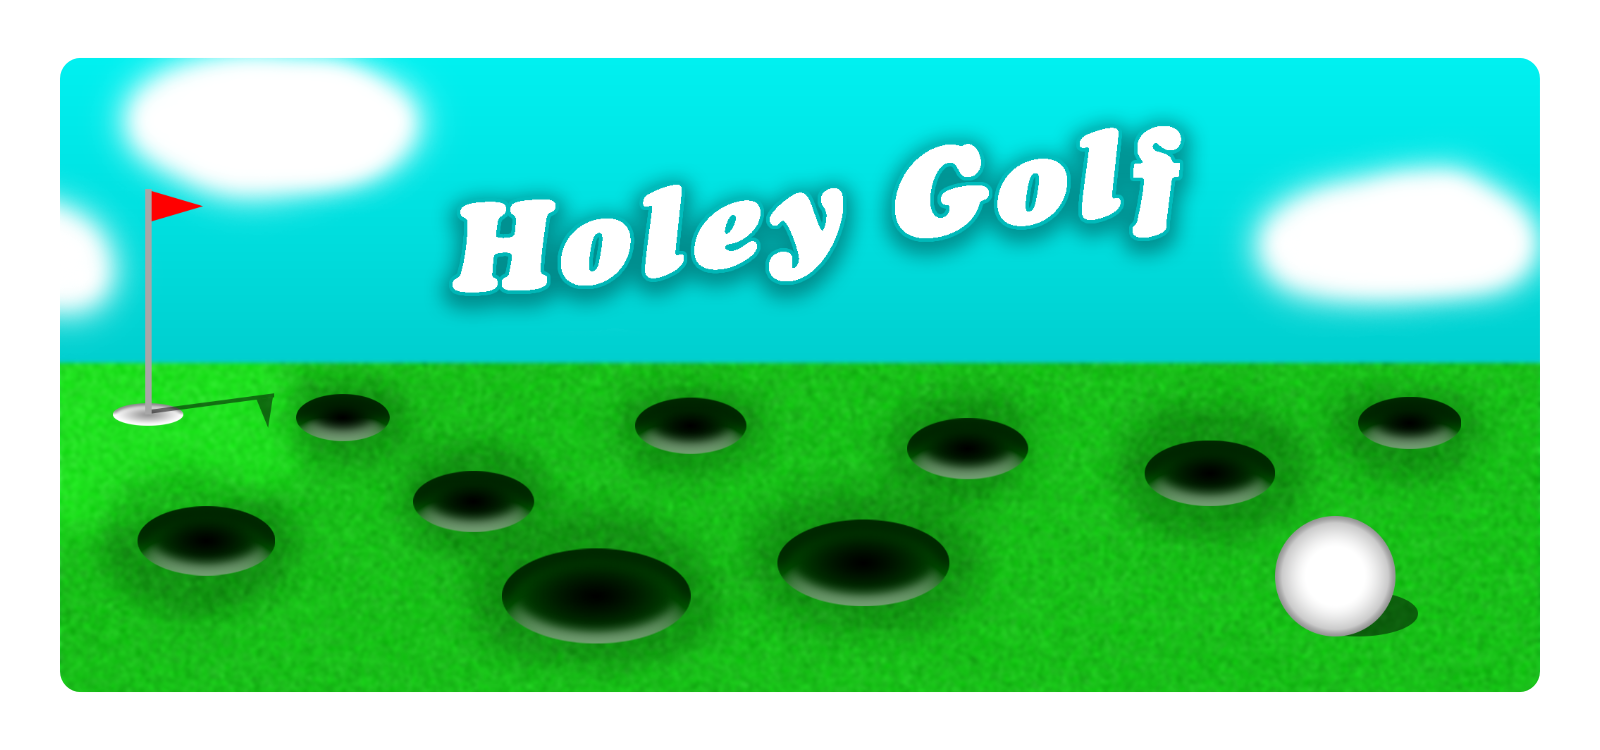 Holey Golf - Brackeys GameJam #3